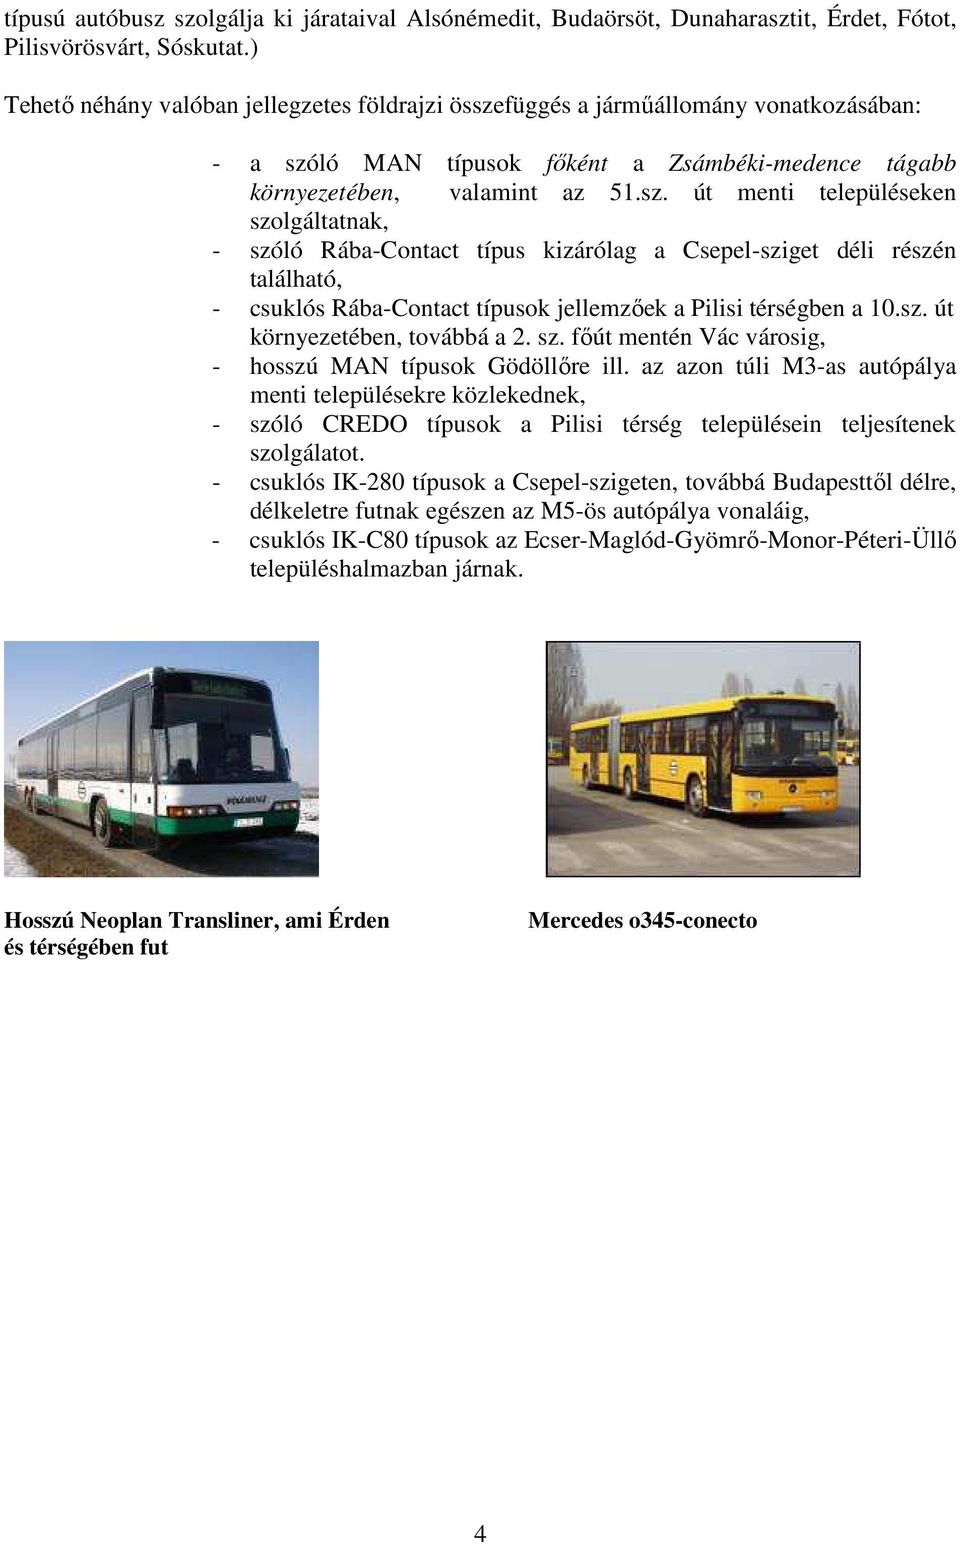 A menetrend szerinti autóbusz közlekedés jármőveinek (Volán) területi képe  a fıváros környezetében VARGA GÁBOR. Bevezetı - PDF Ingyenes letöltés